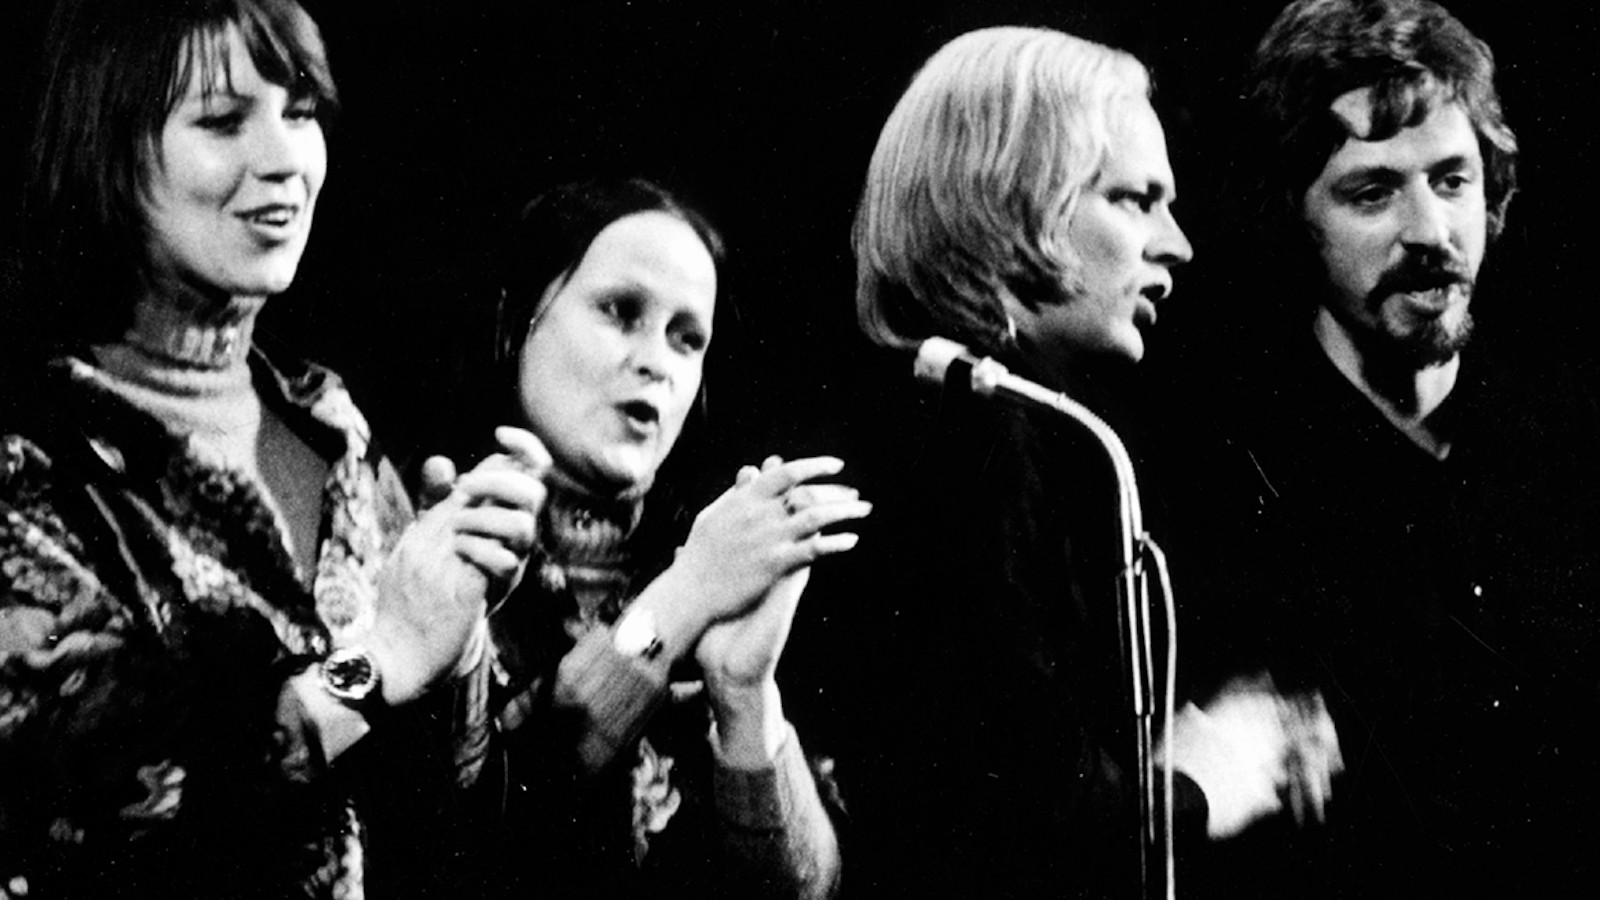 Kuvassa ovat Agit-Propin laulajan Monna Kamu, Sinikka Sokka, Pekka Aarnio ja Martti Launis laulamassa mikrofonien edessä.  Heistä on puolivartalokuvat ja kuva on musta-valkoinen.